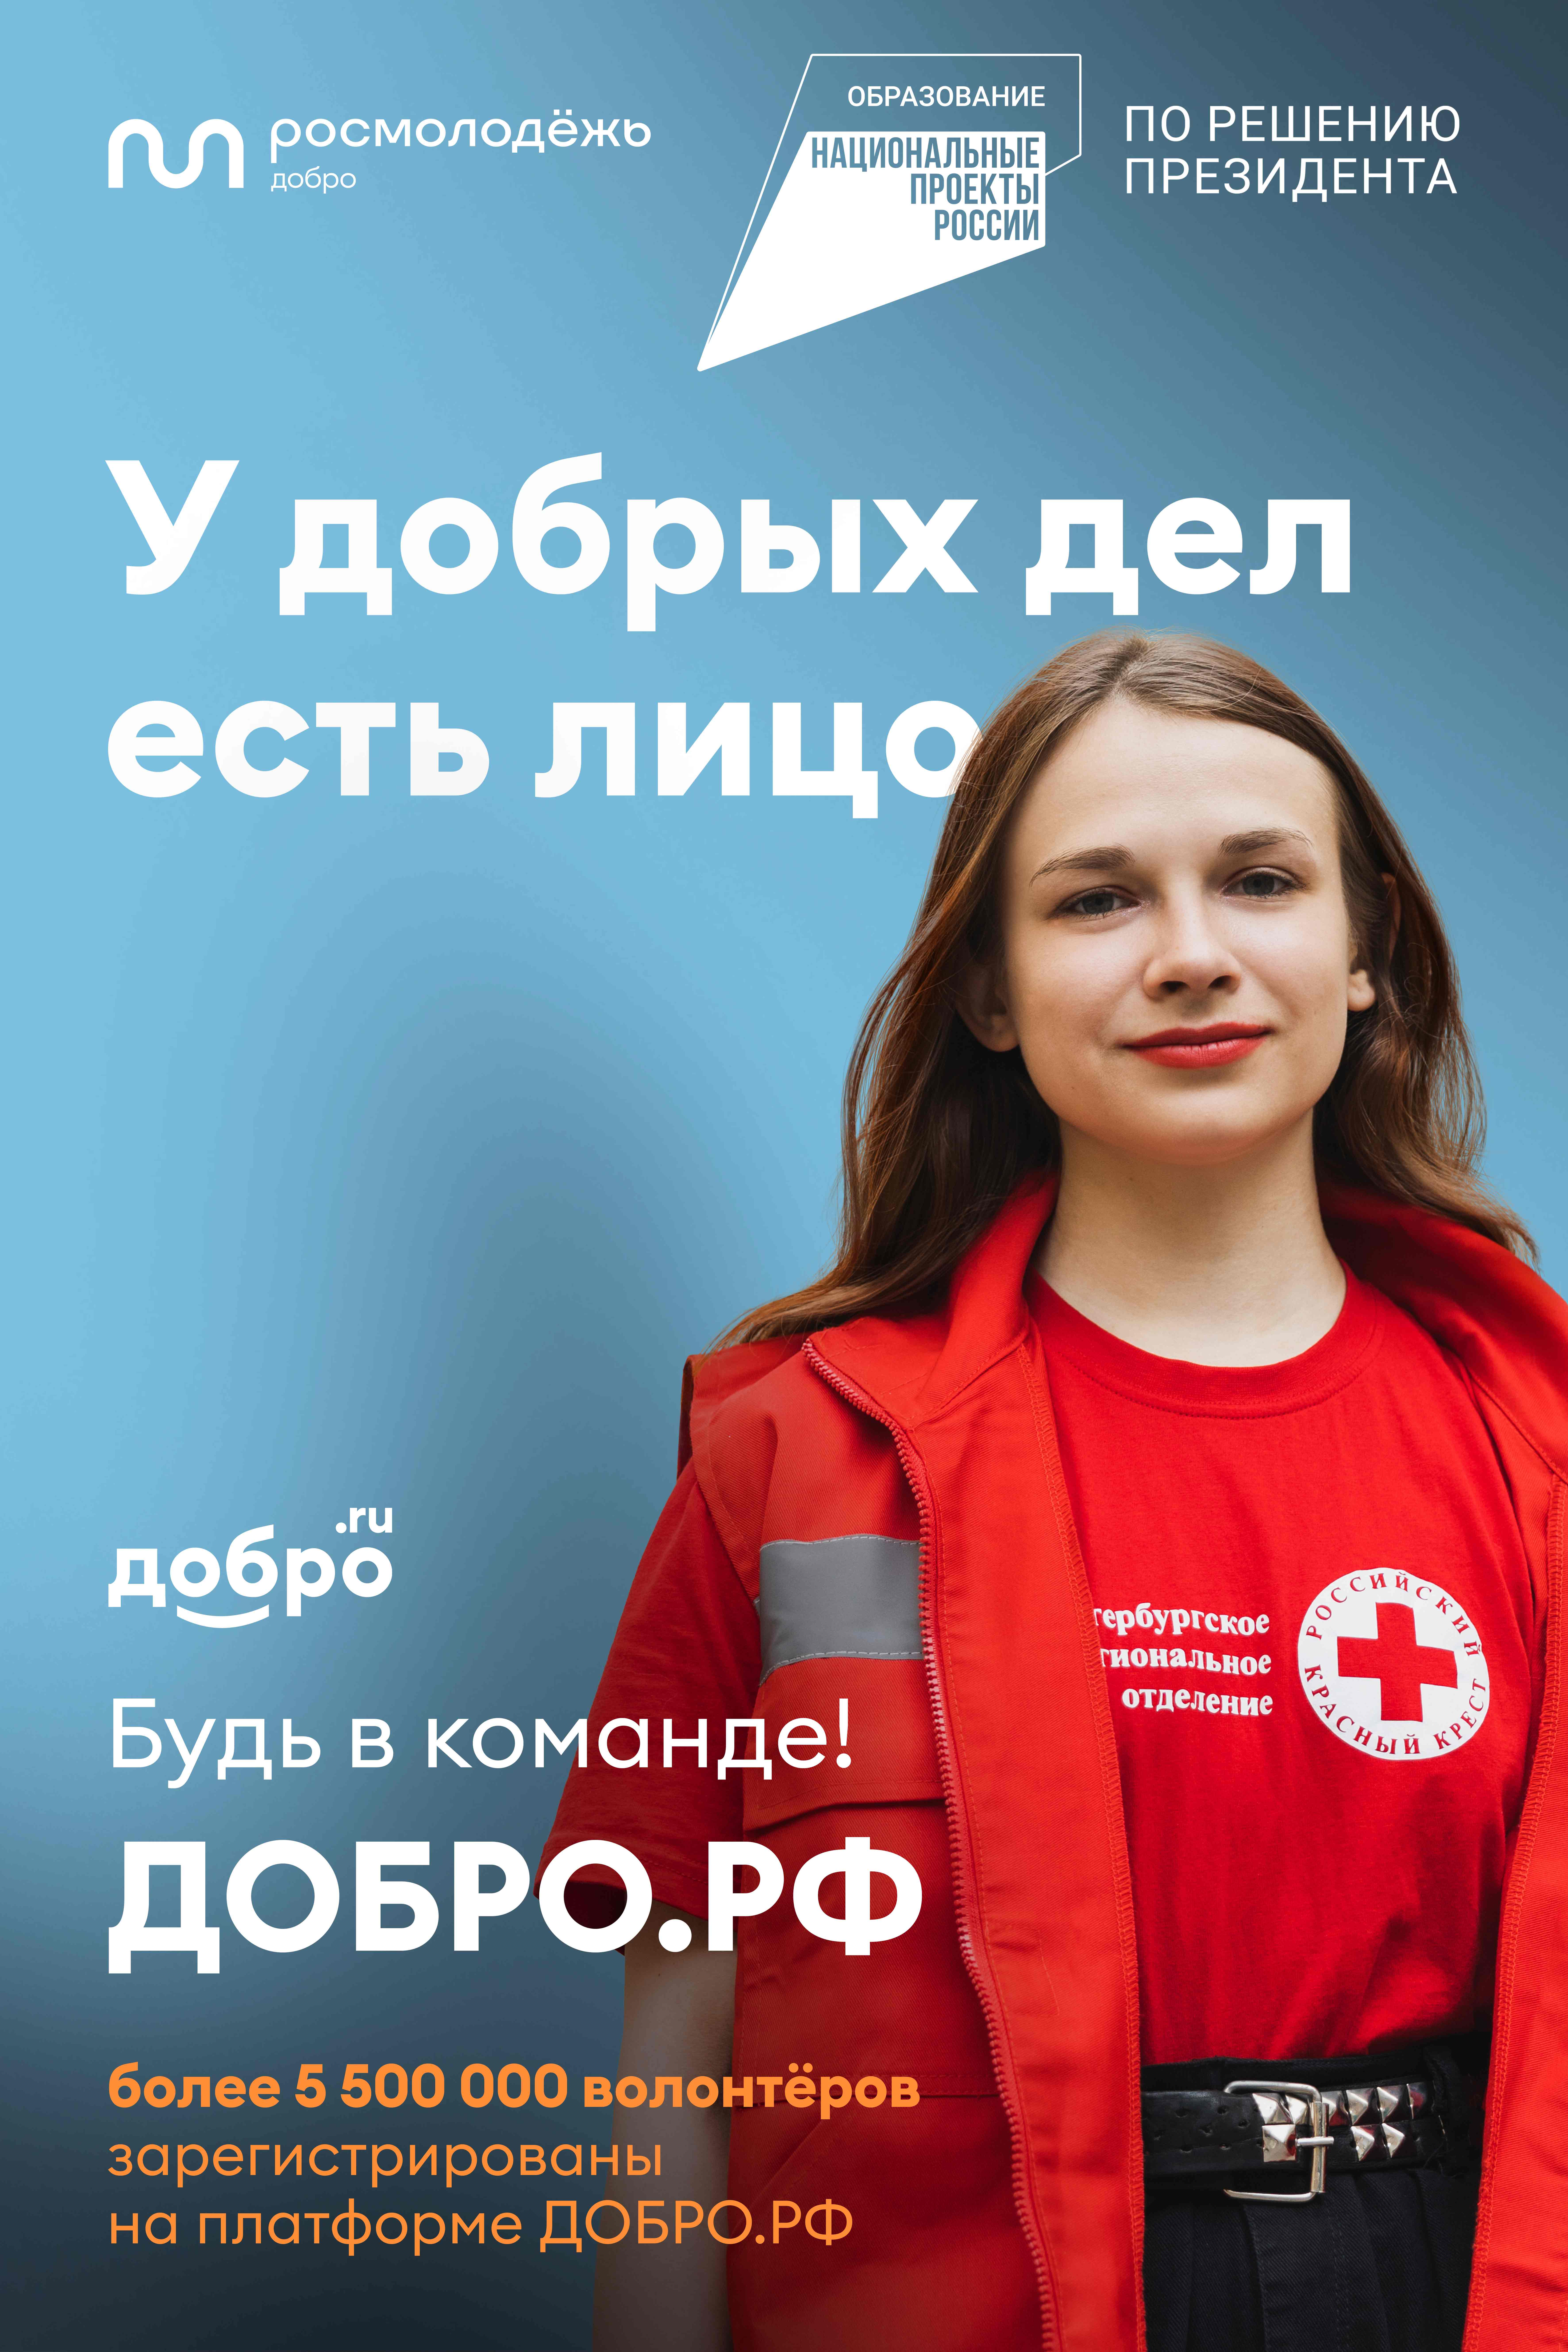 Сегодня по всей России уже более 5,5 миллионов добровольцев зарегистрированы на платформе Добро.РФ.